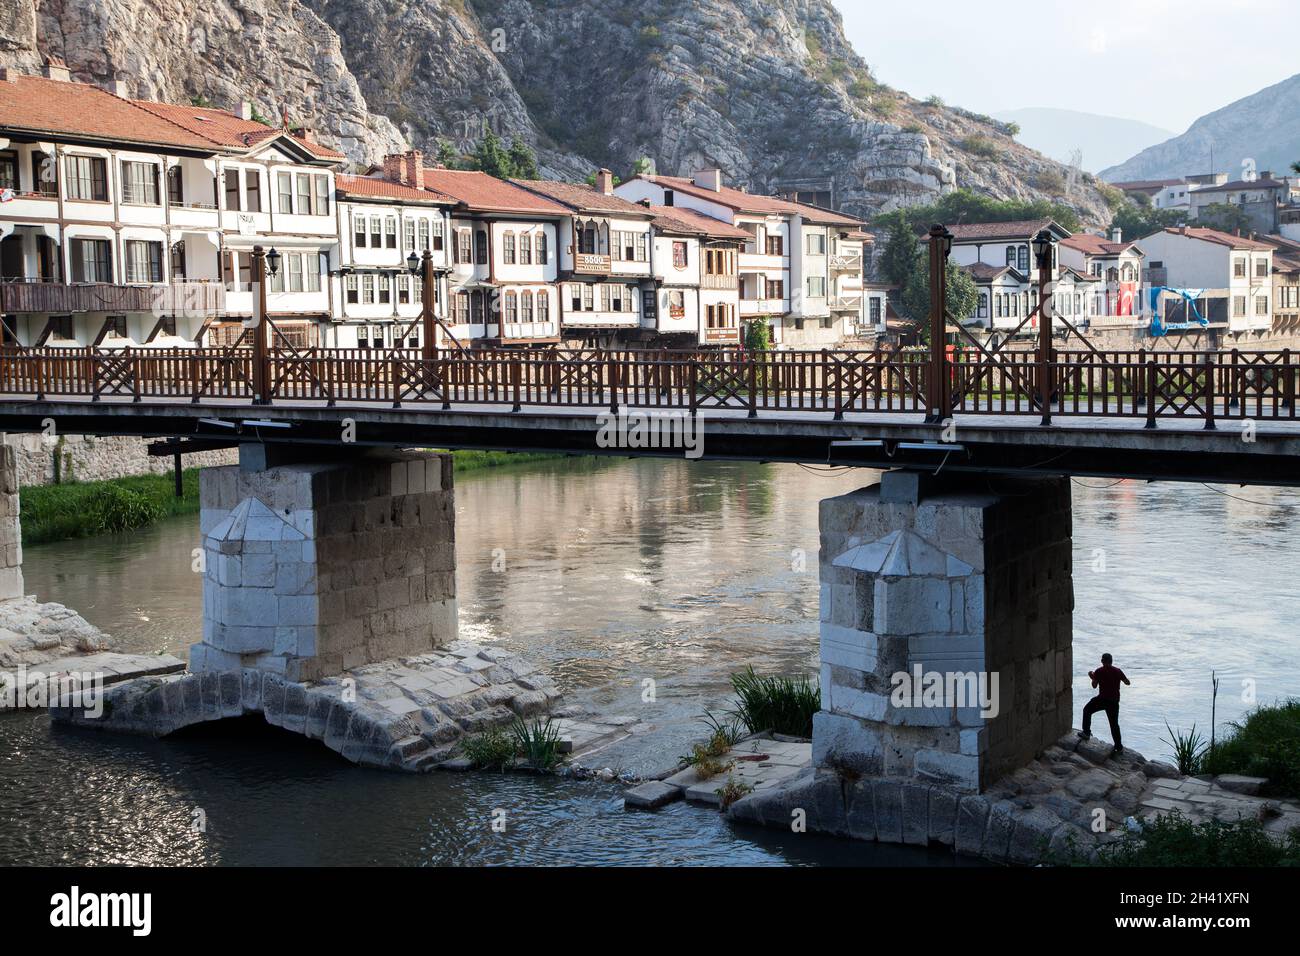 Amasya / Türkei - 09/29/2015: Menschen besuchen die Yesilirmak-Flussgegend, um sich auszuruhen und Sehenswürdigkeiten zu besichtigen. Stockfoto